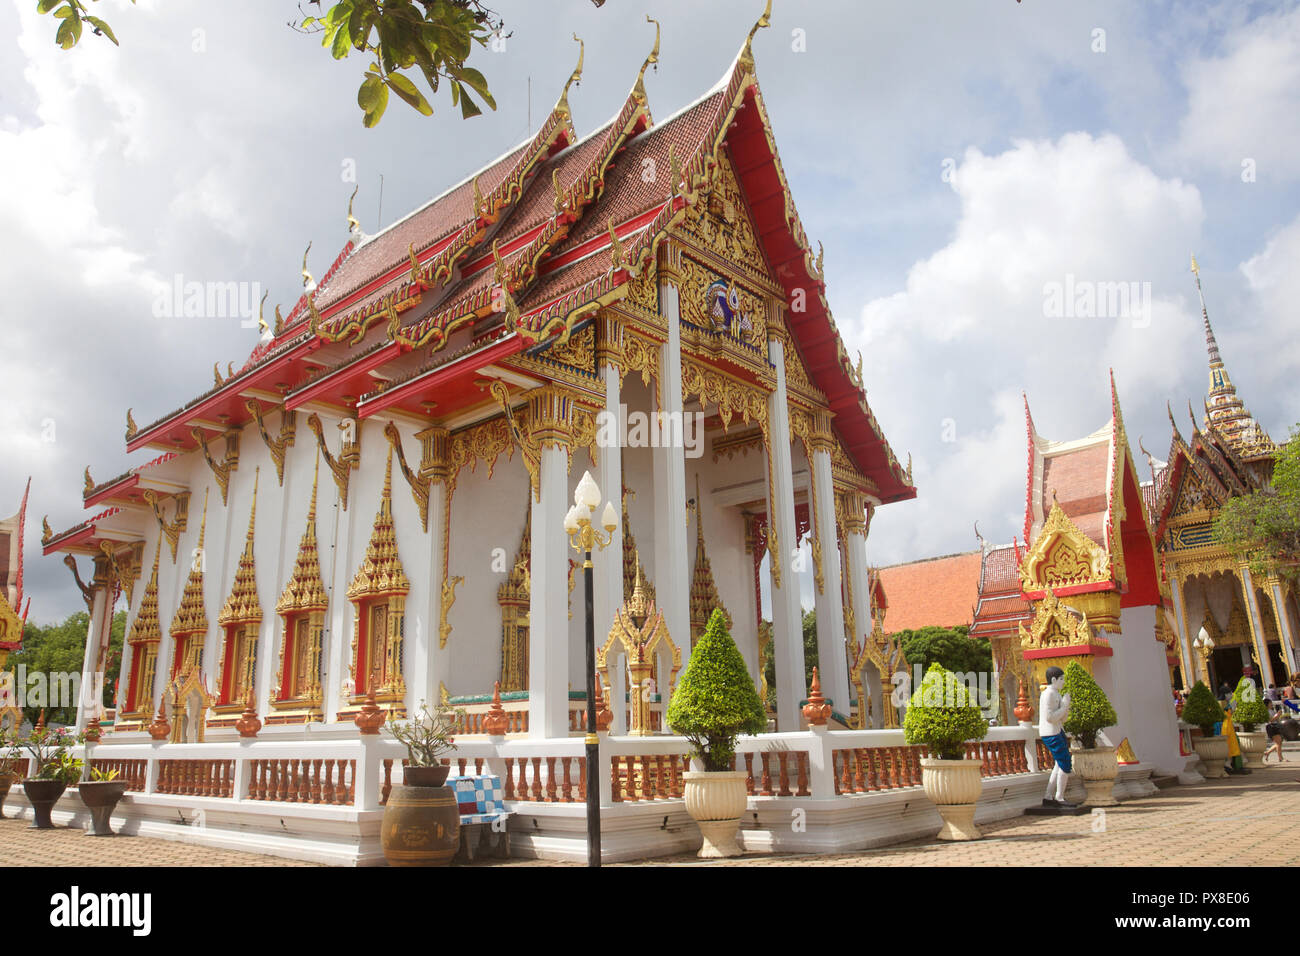 Un bâtiment au temple Wat Chalong, Phuket, Thailand Banque D'Images